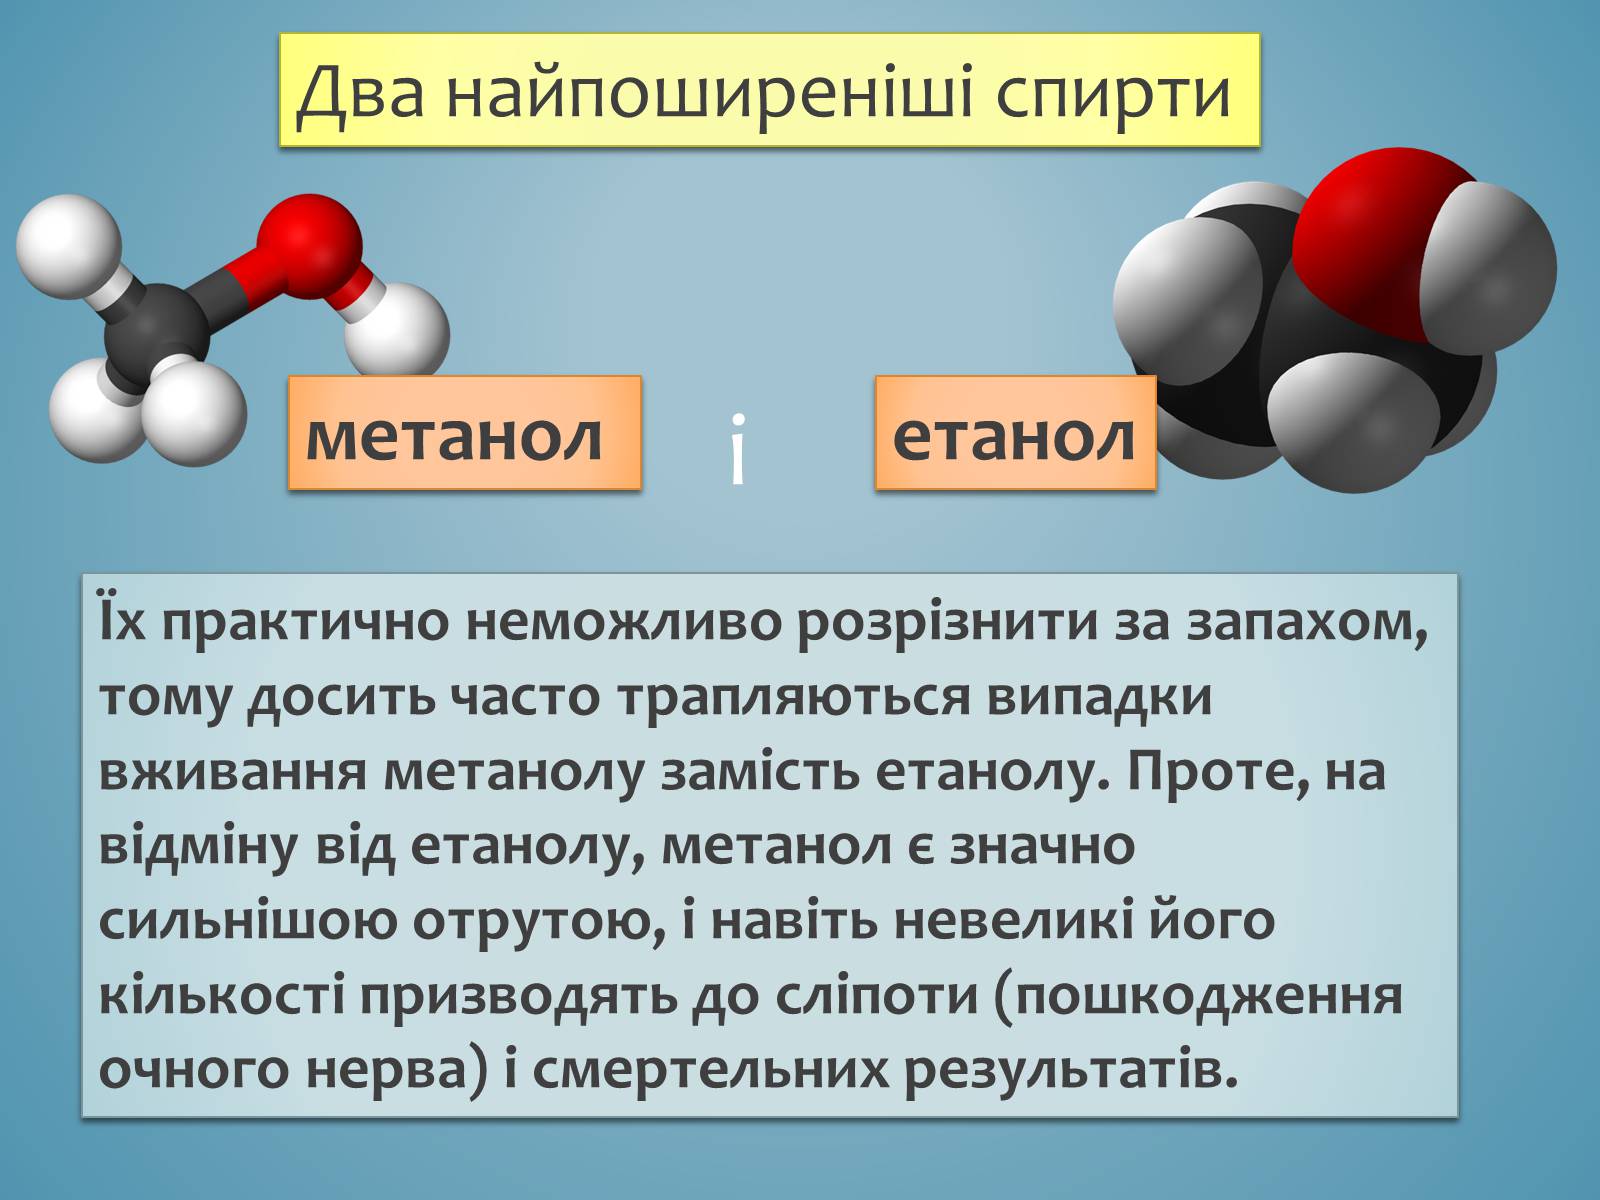 Определение метанола